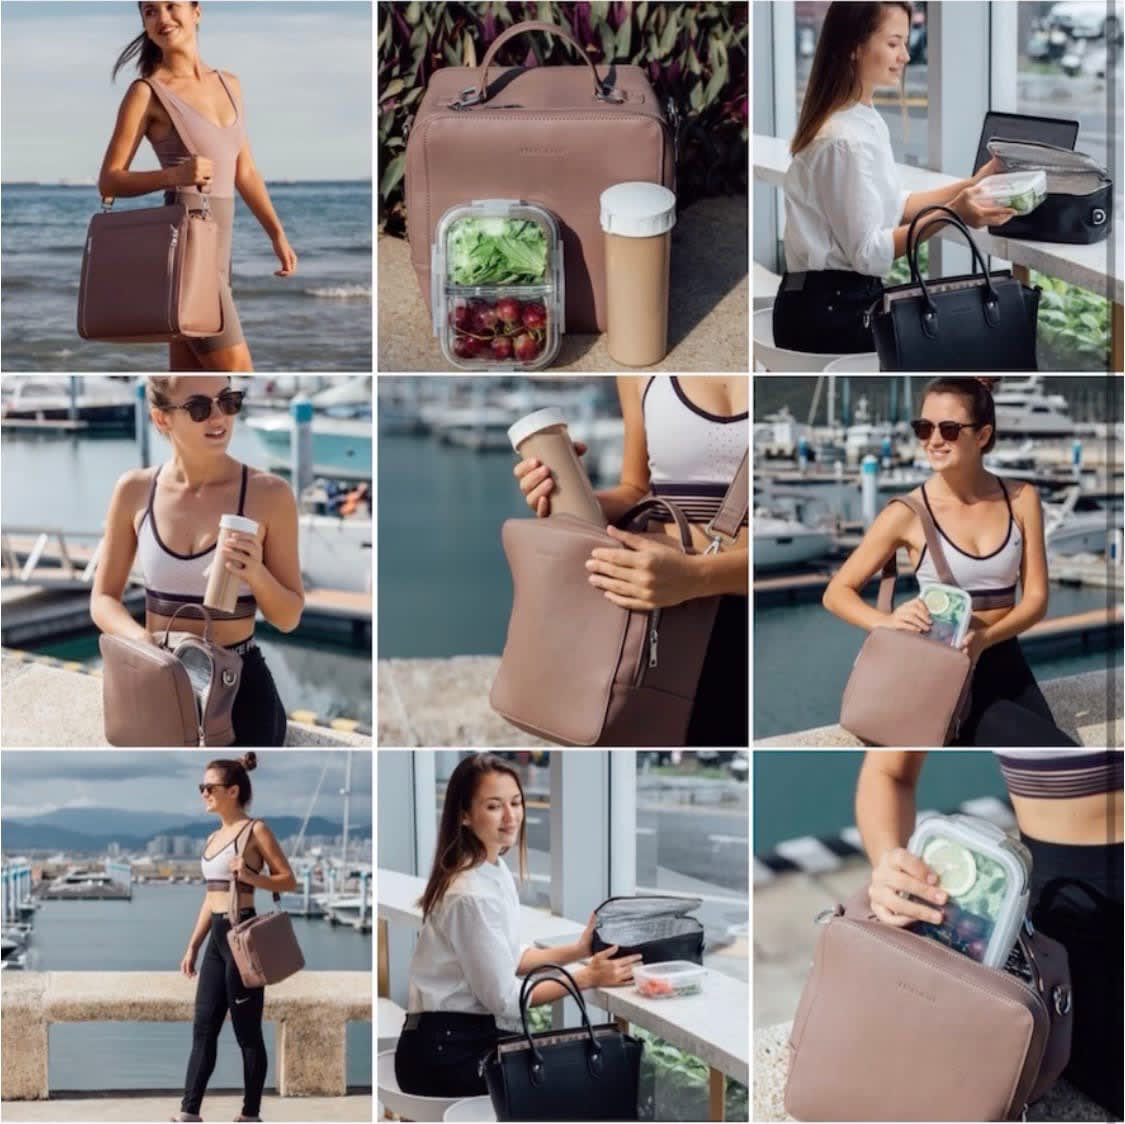 product photo china lifestyle instagram feed instashop Amazon Amazon Product bags purse